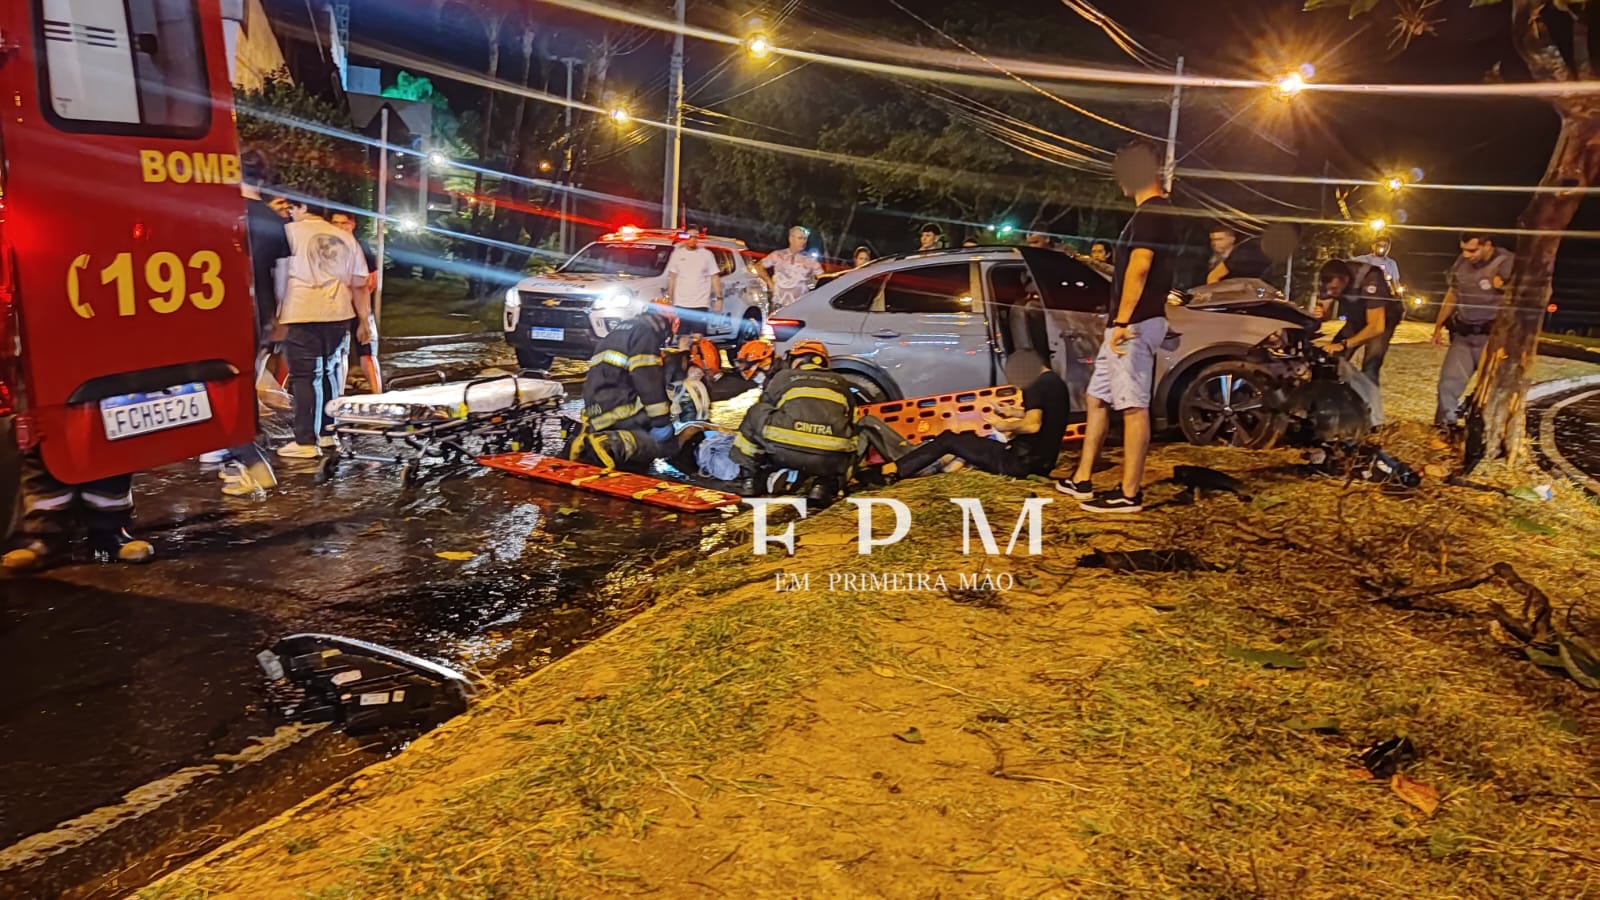 Quatro jovens ficaram feridas em um grave acidente em avenida de Franca 